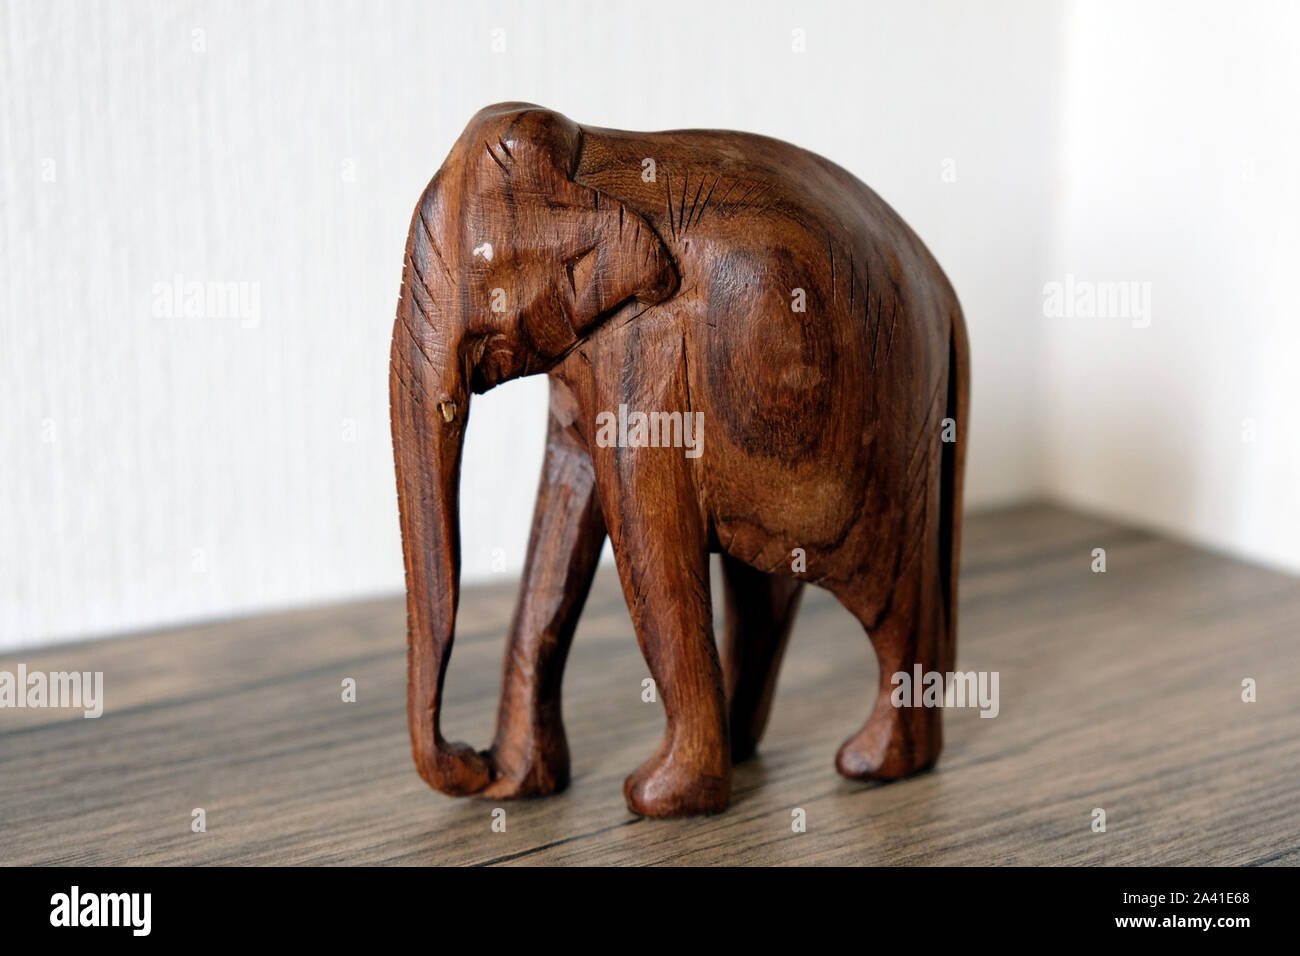 Statuetta di un elefante su un ripiano, elefante in legno colore marrone scuro di close-up. Foto Stock